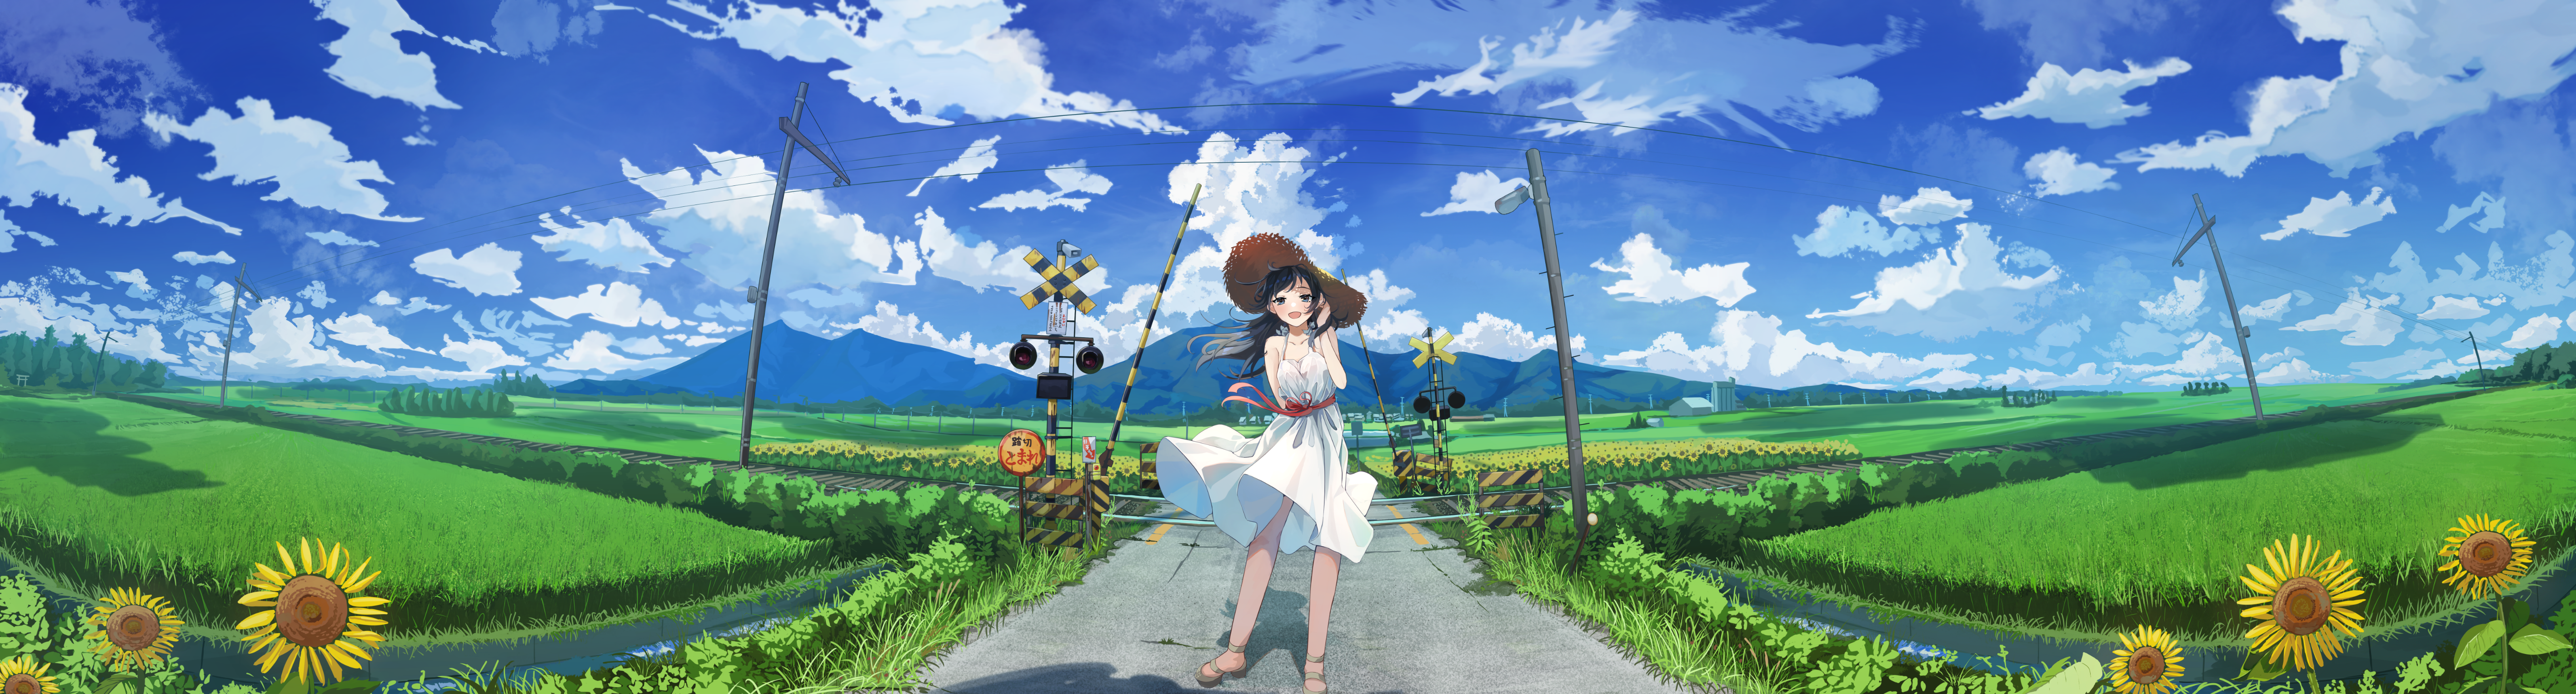 Anime Anime Girls Original Characters Solo Artwork Digital Art Fan Art Dandelion Hat Straw Hat 5668x1527